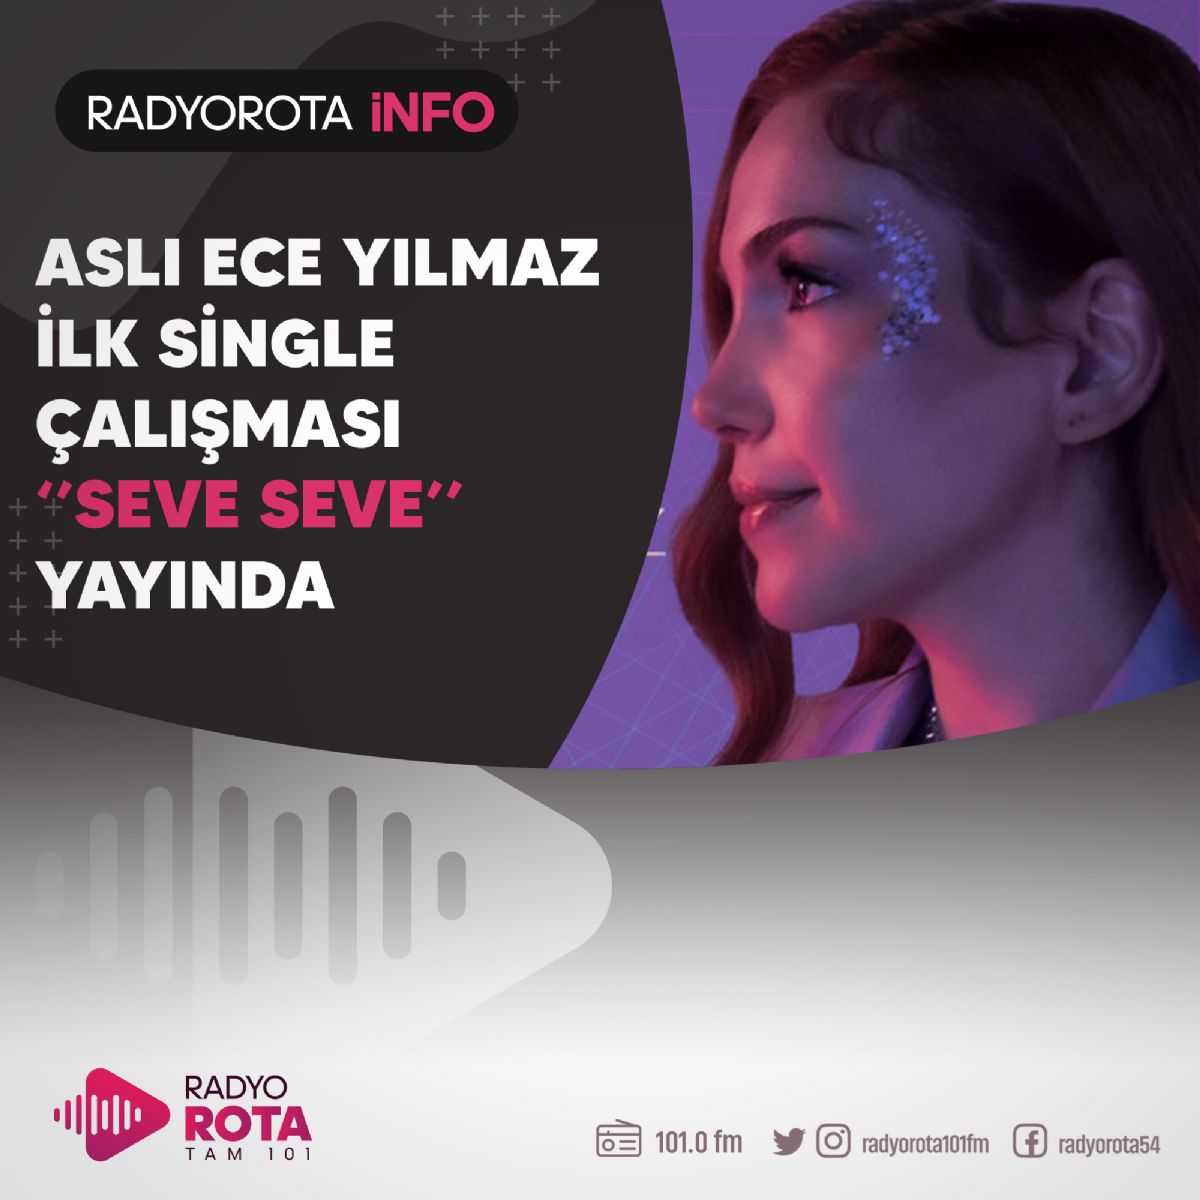 Asl Ece Ylmaz - Seve Seve Video Klibi Yaynda